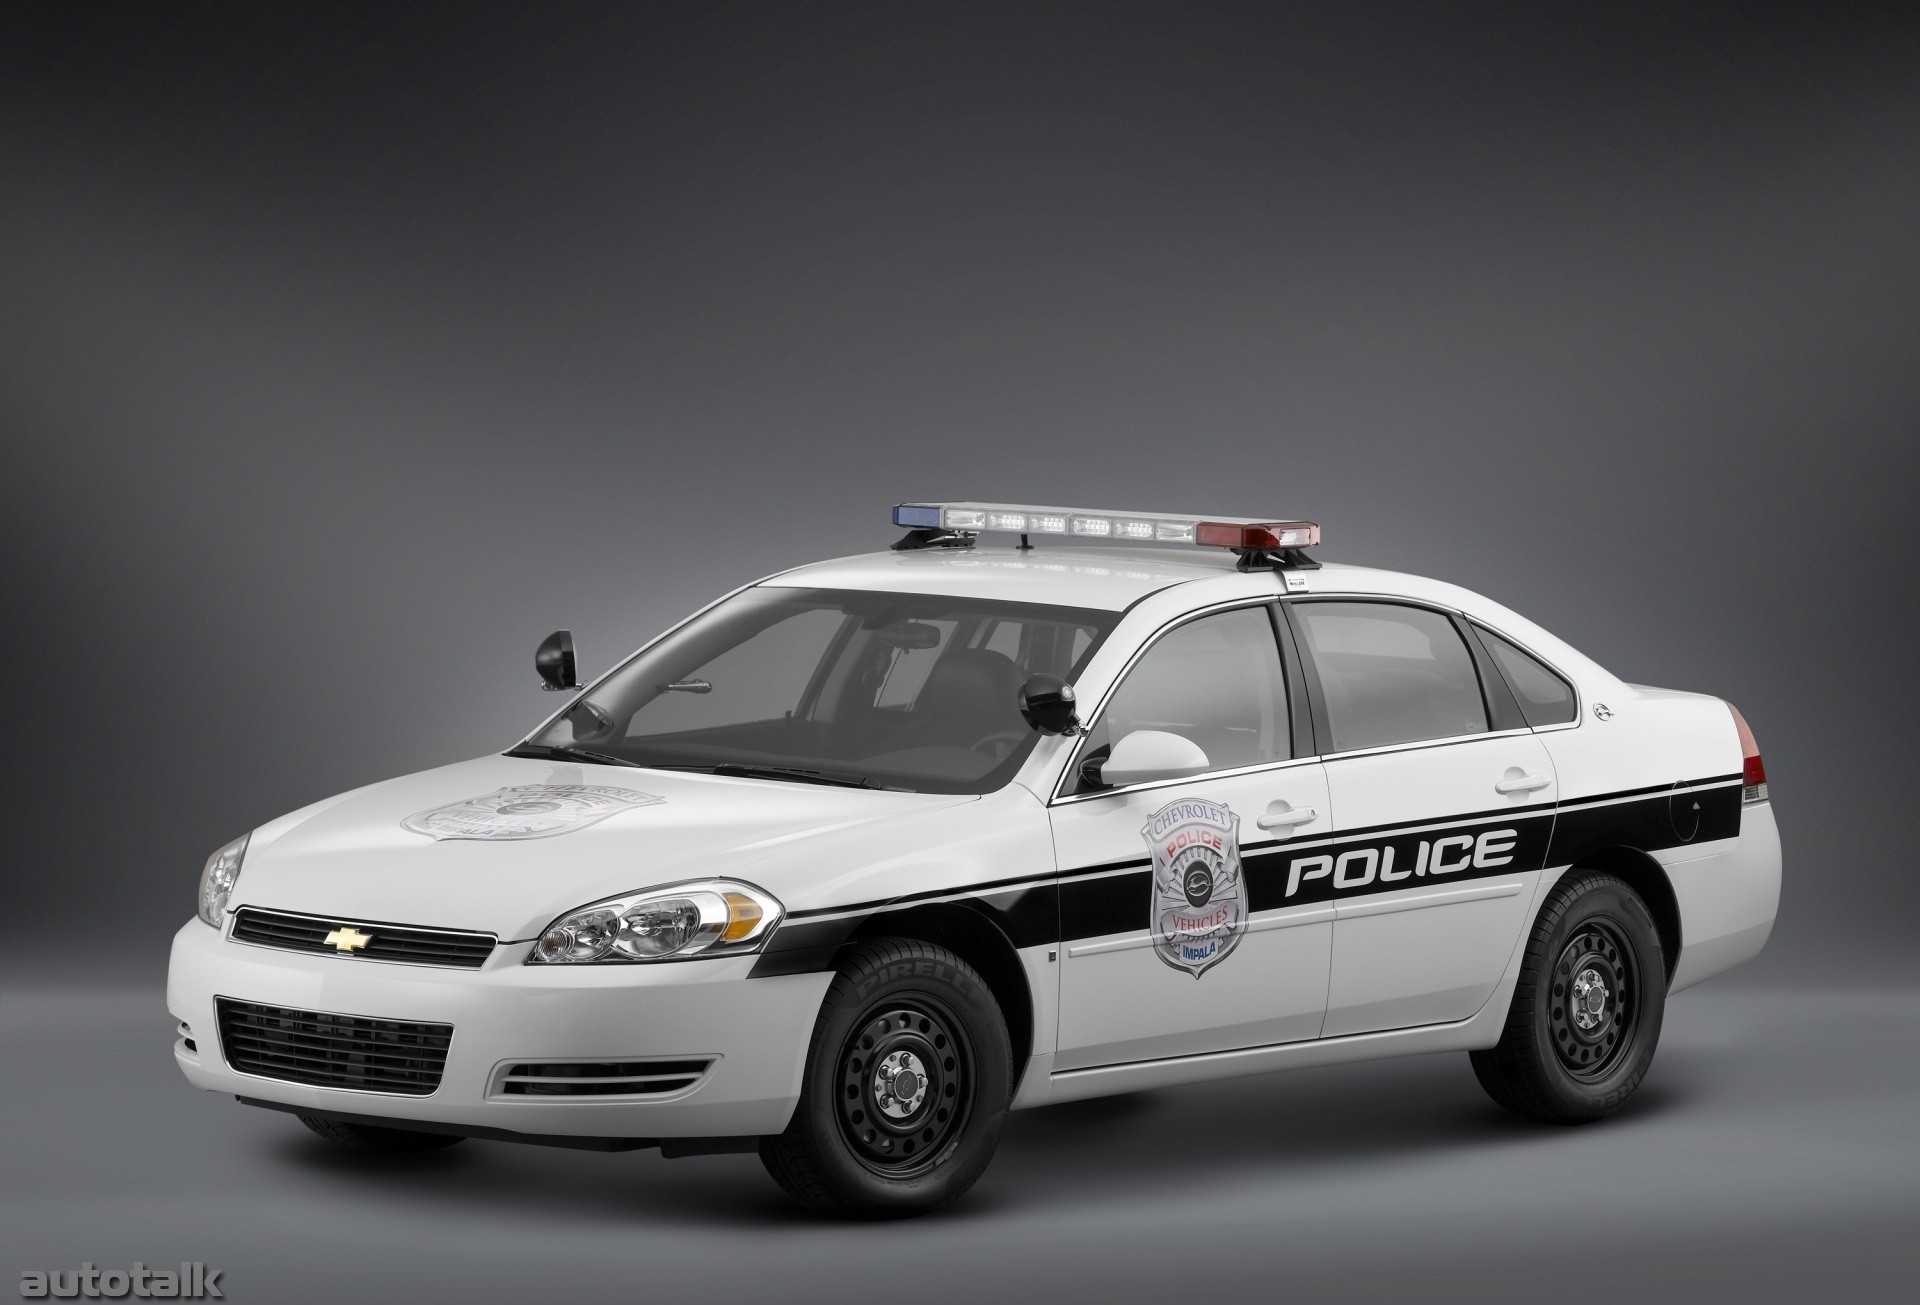 2007 Chevrolet Impala Police Vehicle